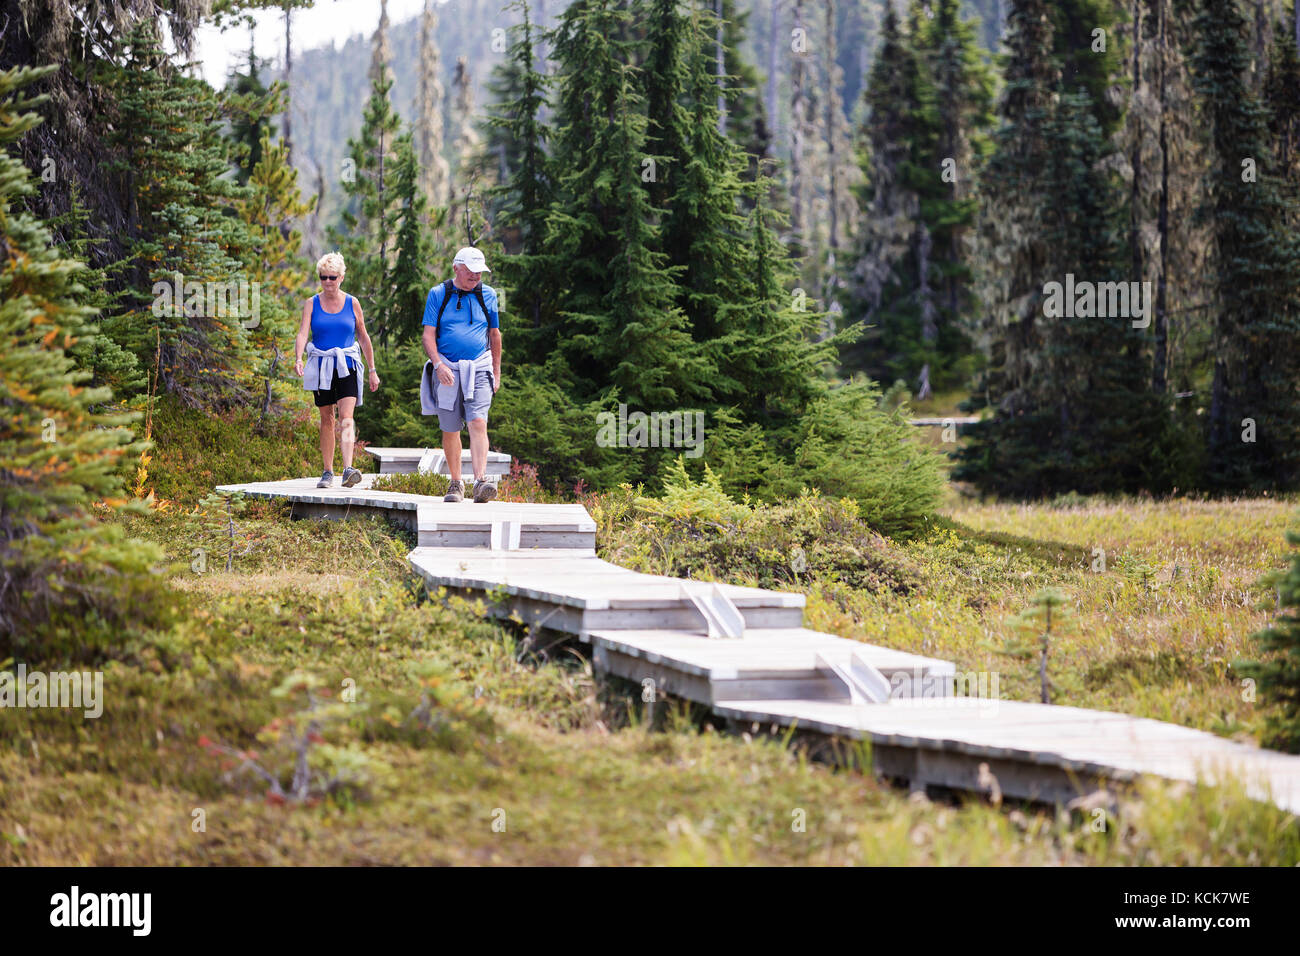 Una coppia senior cammina lungo una serie di passerelle, costruite per gli escursionisti di un giorno esplorando Paradise Meadows vicino al Monte Washington. Paradise Meadows, Strathcona Park, Vancouver Island, British Columbia, Canada. Foto Stock